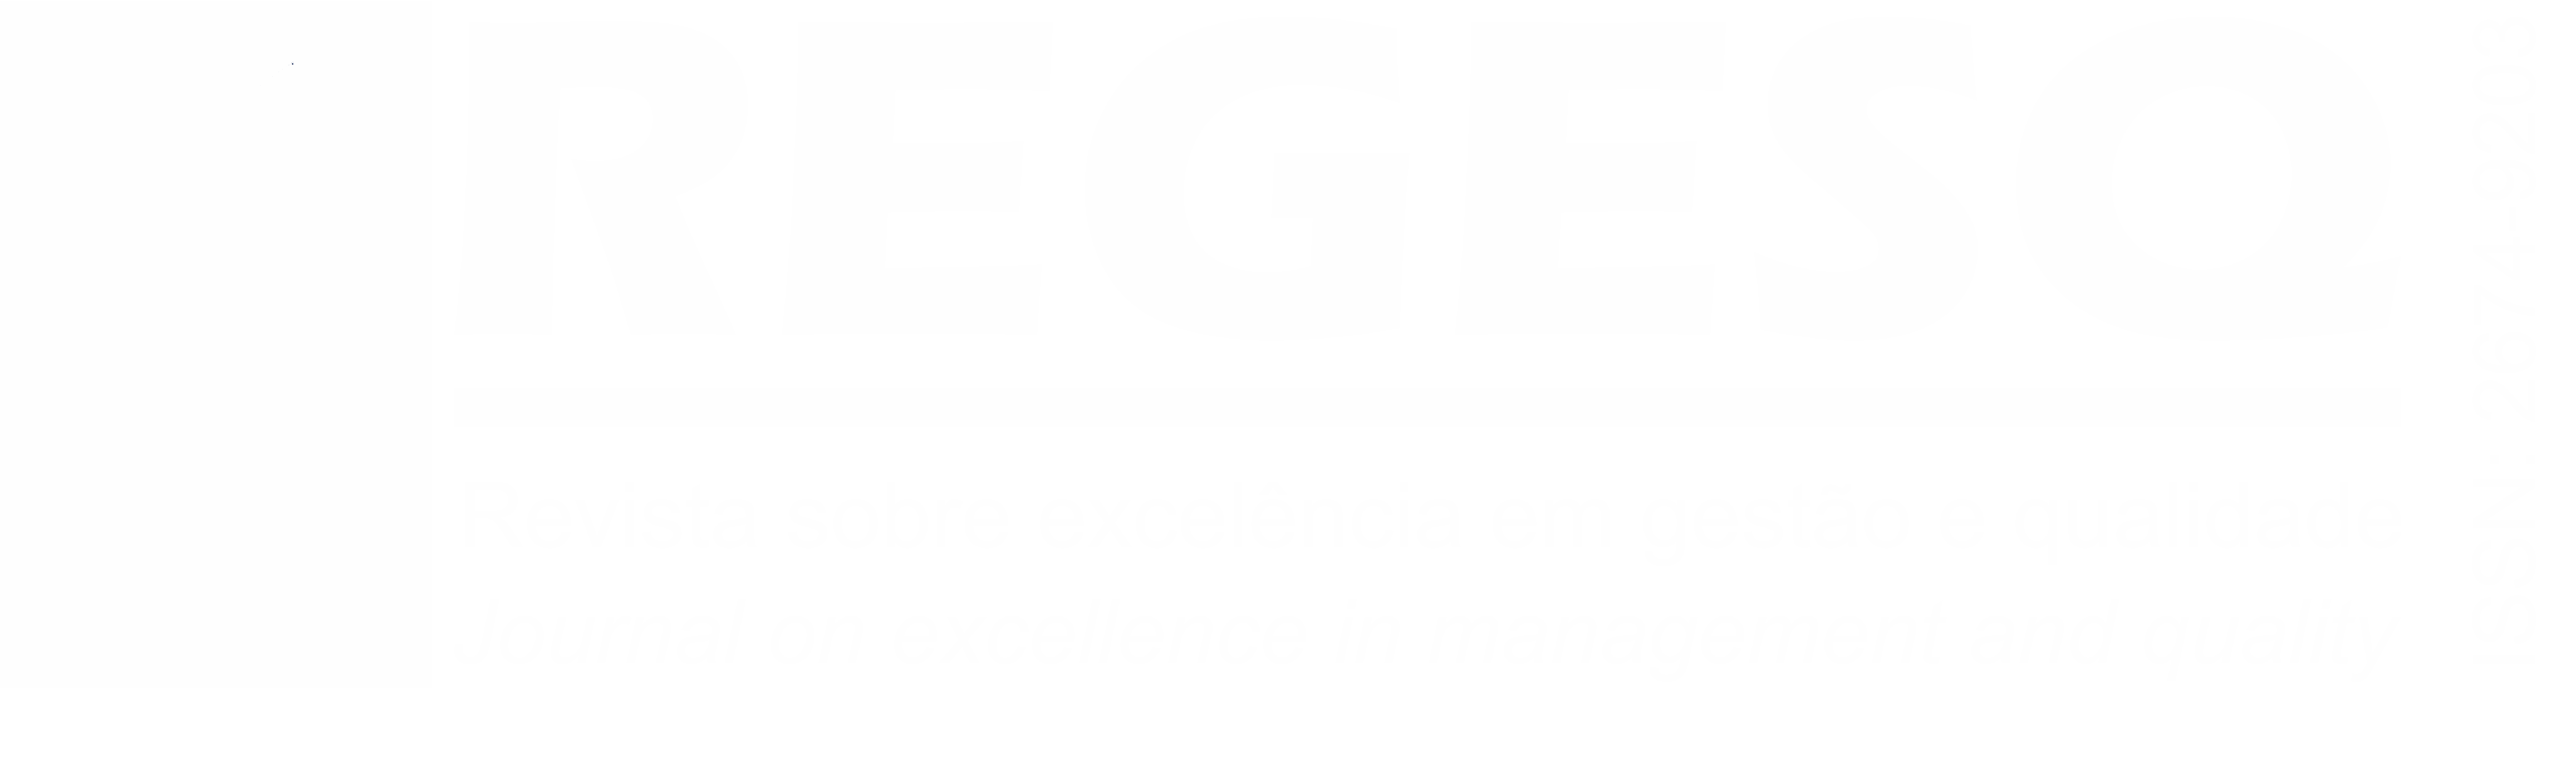 Revista sobre excelência em gestão e qualidade